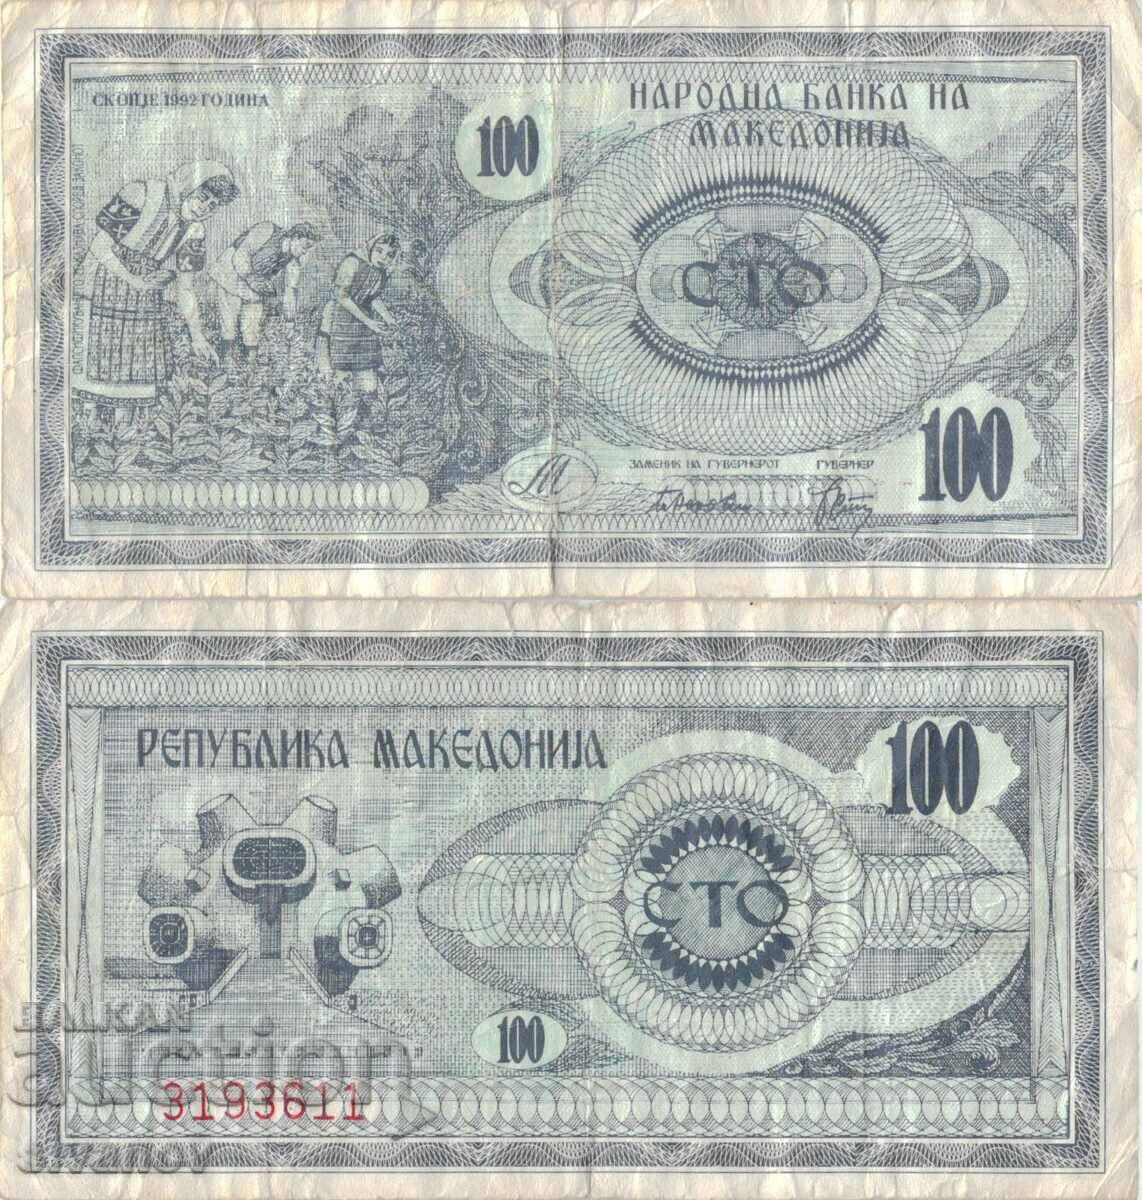 Macedonia 100 denari 1992 bancnota #5211